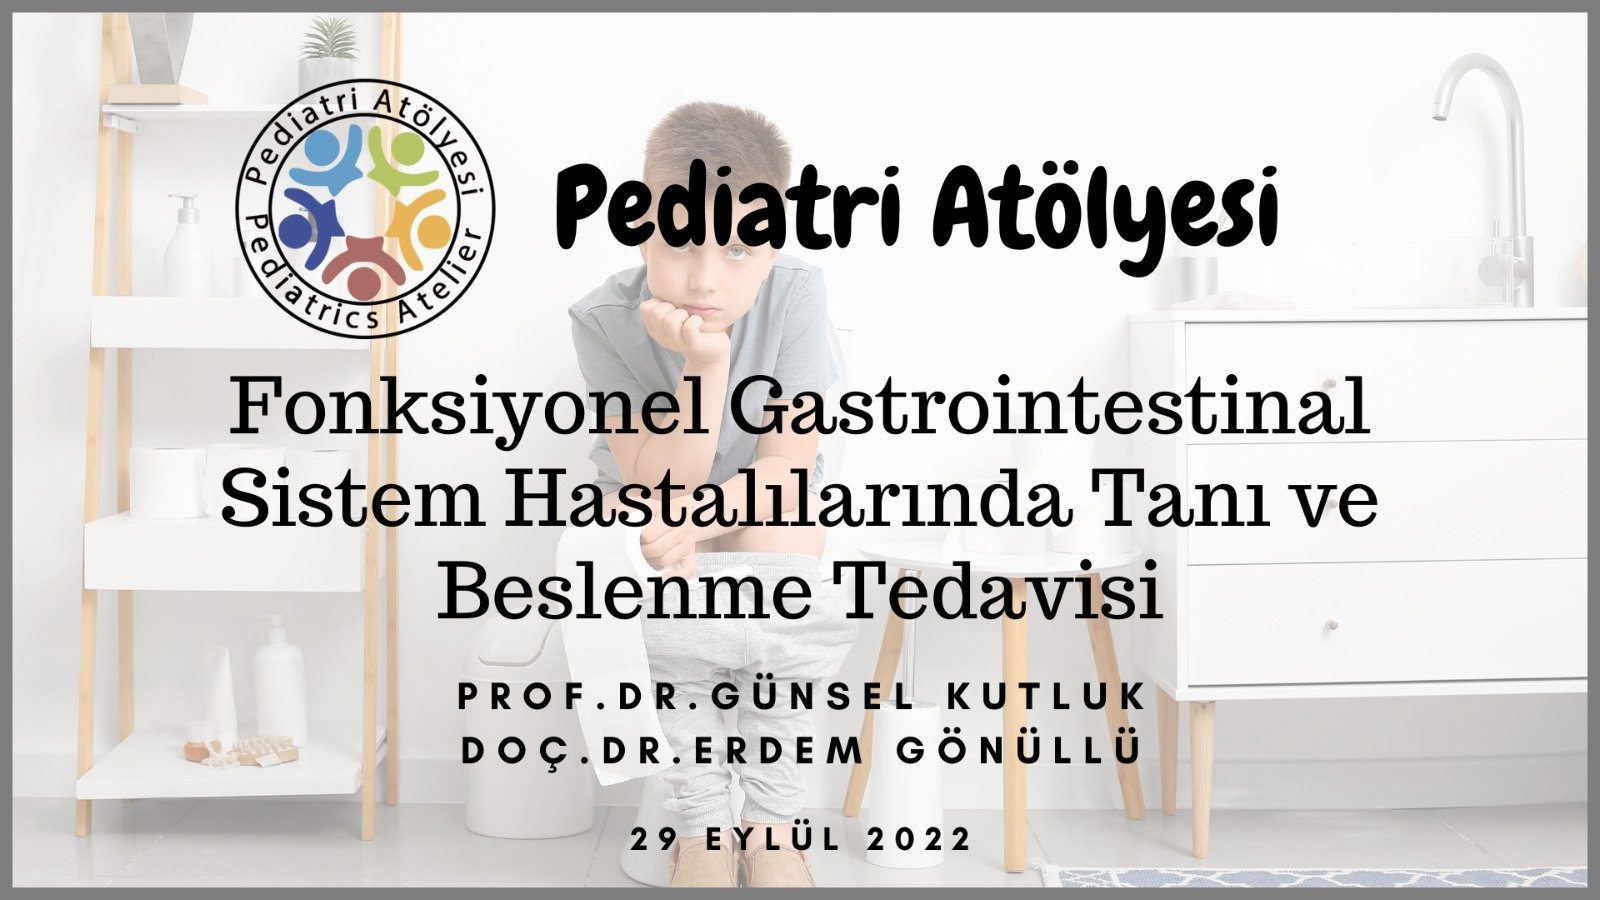 Fonksiyonel Gastrointestinal Sistem Hastalılarında Tanı ve Beslenme Tedavisi